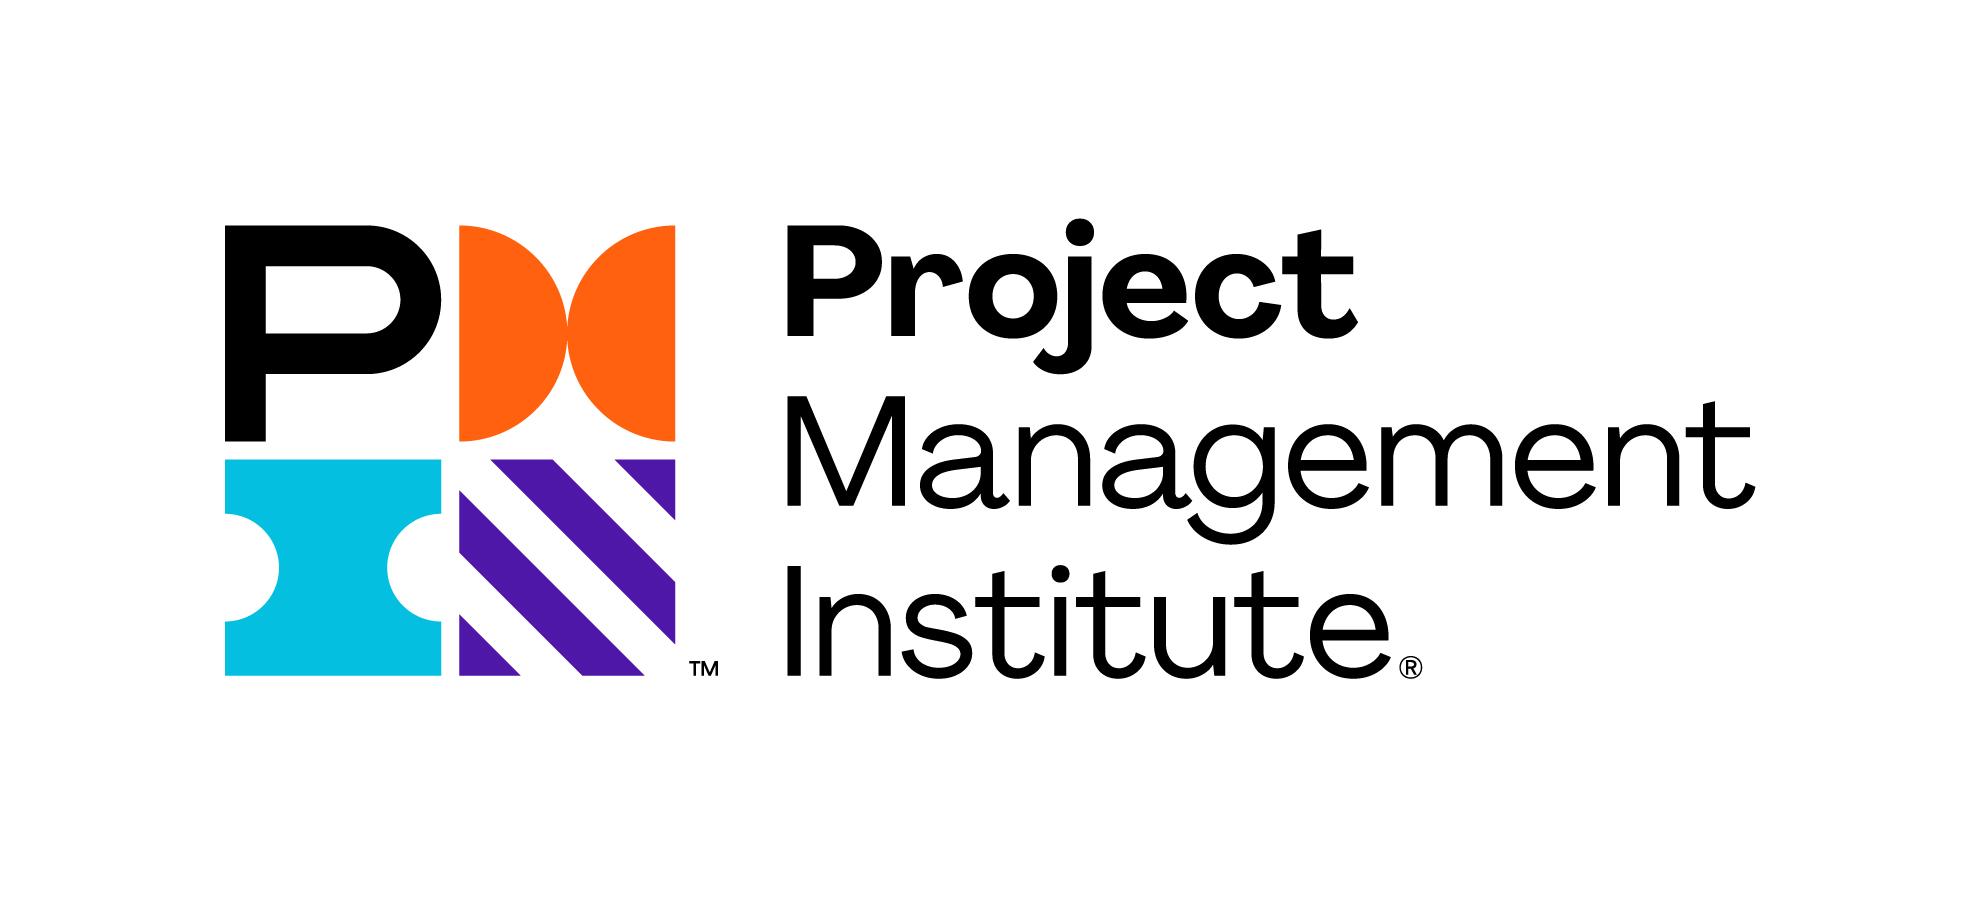 Основная деятельность PMI включает разработку стандартов и методологий в области управления проектами, а также предоставление профессиональных сертификаций, таких как Project Management Professional (PMP), для специалистов в этой области.